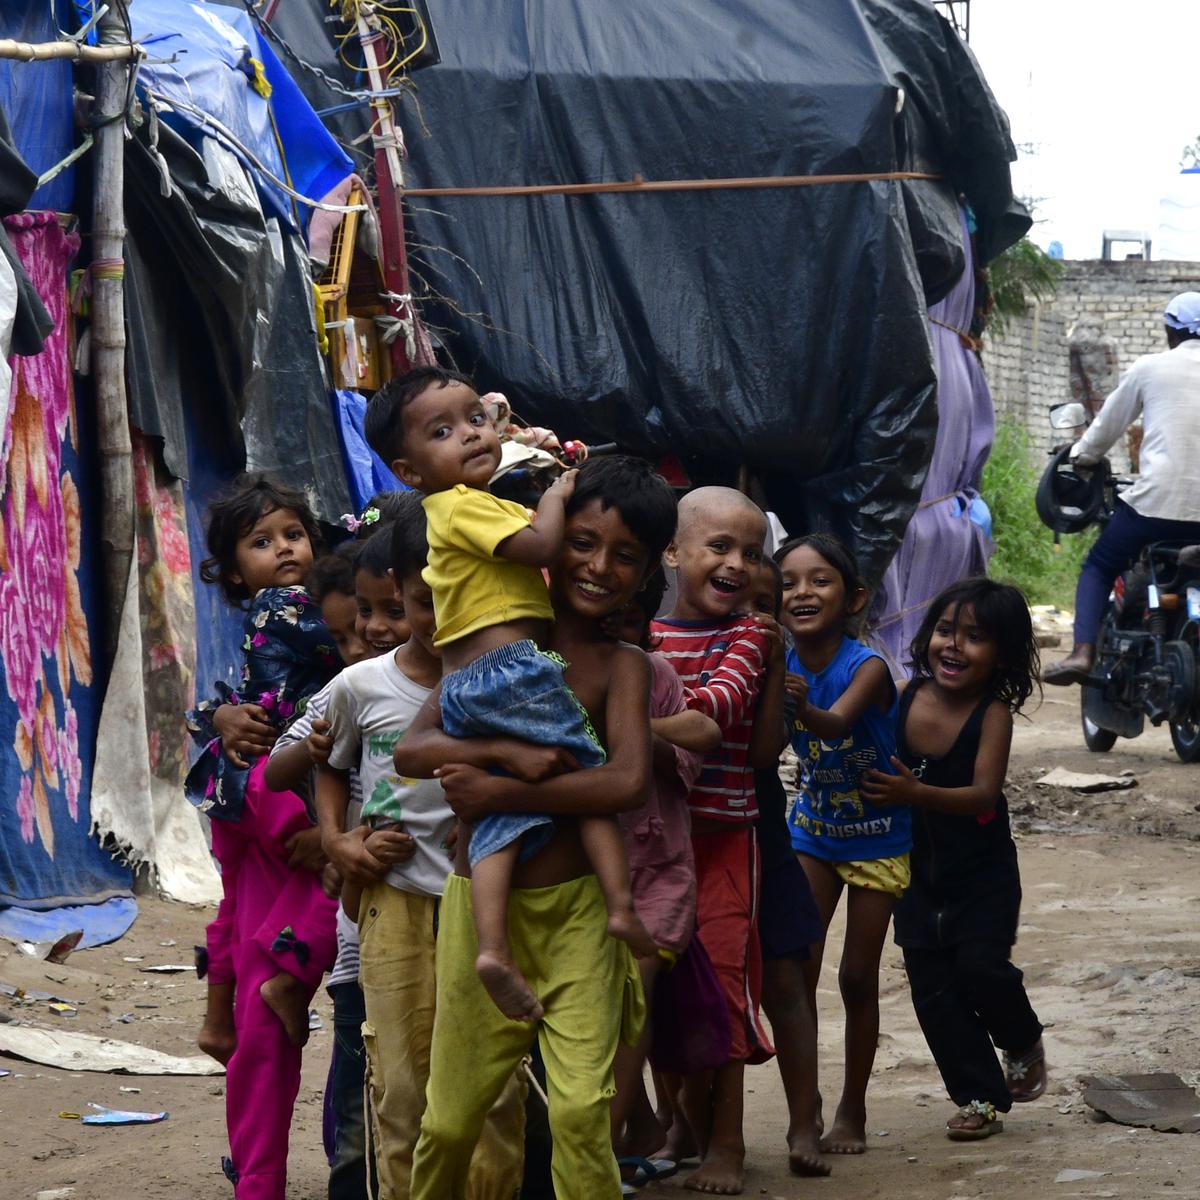 INDIA'S ROHINGYA REFUGEE CHILDREN ARE NOT CRIMINALS